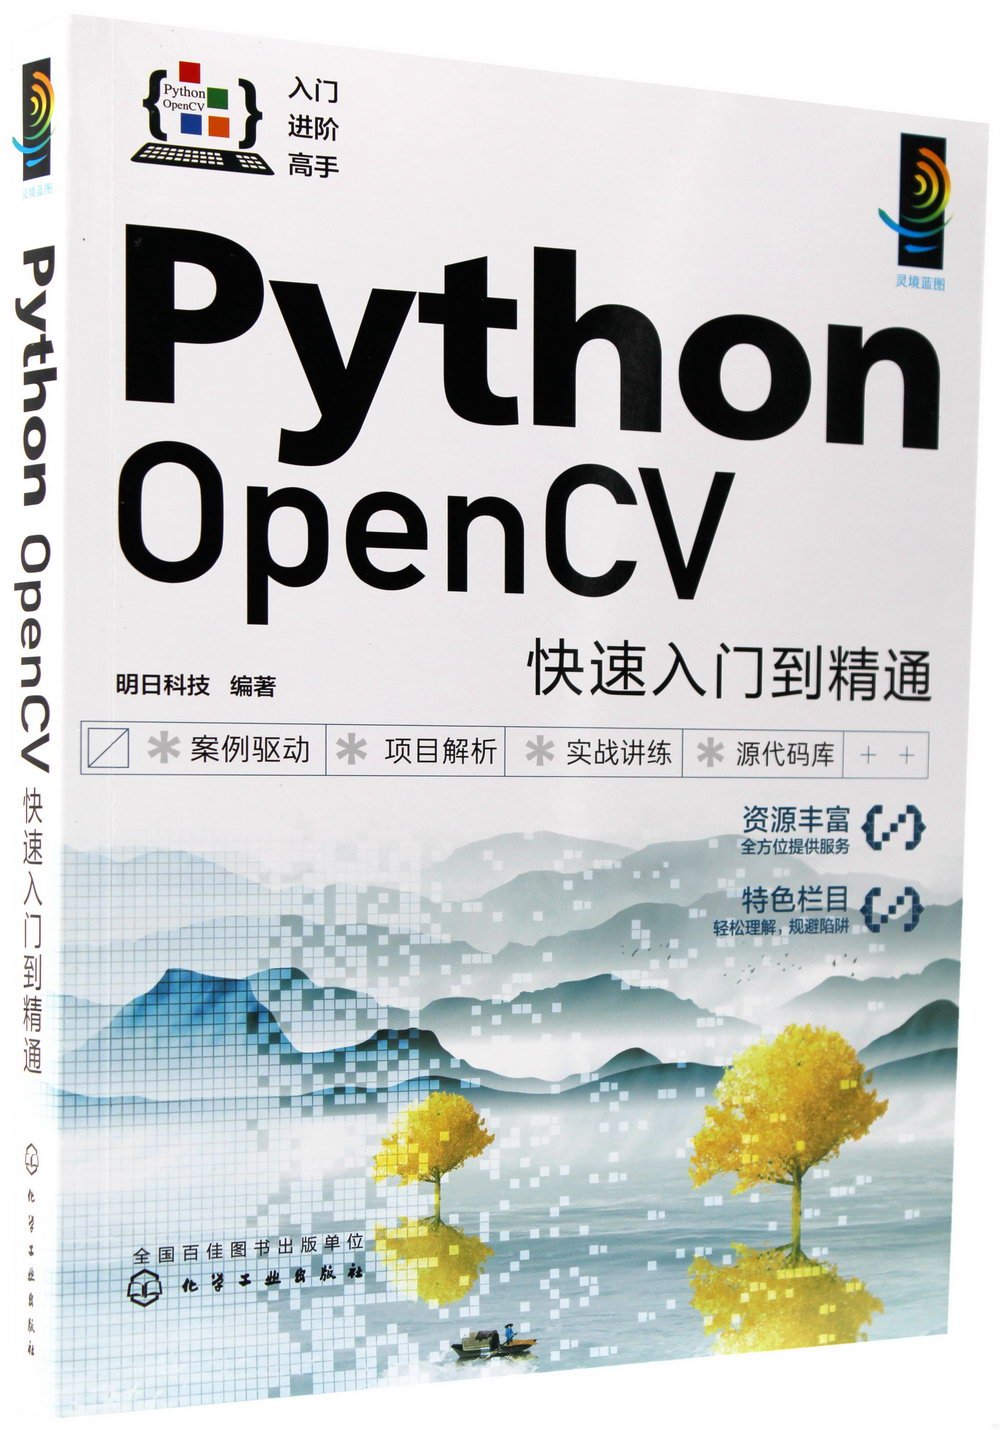 Python OpenCV快速入門到精通